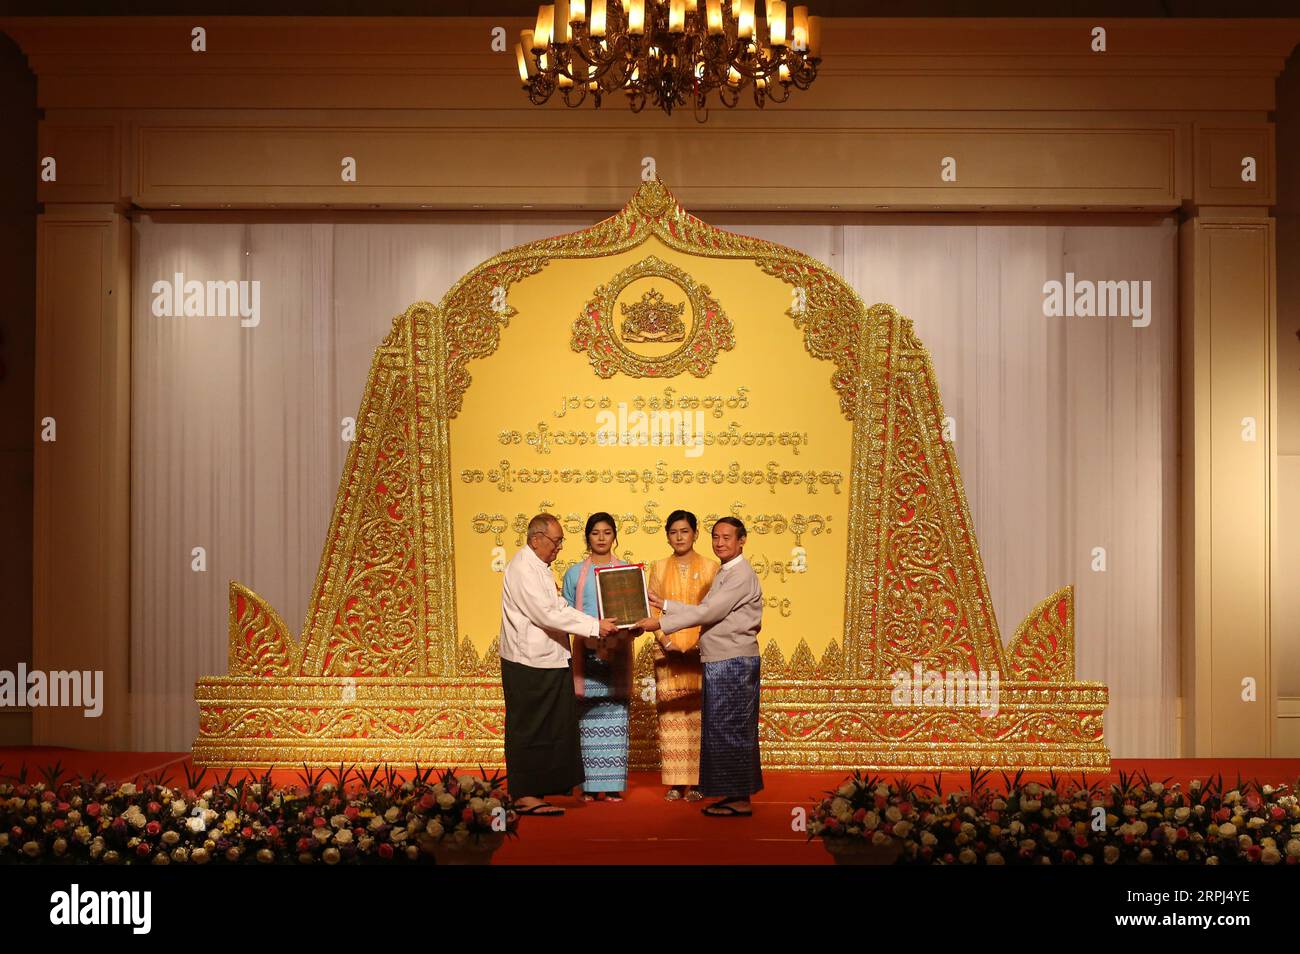 191127 -- YANGON, 27 novembre 2019 -- il presidente del Myanmar U Win Myint 1st R presenta il premio a U Tin Maung Myint L, davanti durante la cerimonia di premiazione dei National Literary Awards NLA a Yangon, Myanmar, 27 novembre 2019. Le autorità del Myanmar hanno consegnato premi letterari a 36 doyen letterati per l'anno 2018 a Yangon mercoledì. Un totale di 12 letterati sono stati premiati con gli NLA e due autori -- U Tin Maung Myint e U Htin Aung Chein hanno vinto gli NLA a vita. Foto di /Xinhua MYANMAR-YANGON-PREMIO LETTERARIO HaymhanxAung PUBLICATIONxNOTxINxCHN Foto Stock